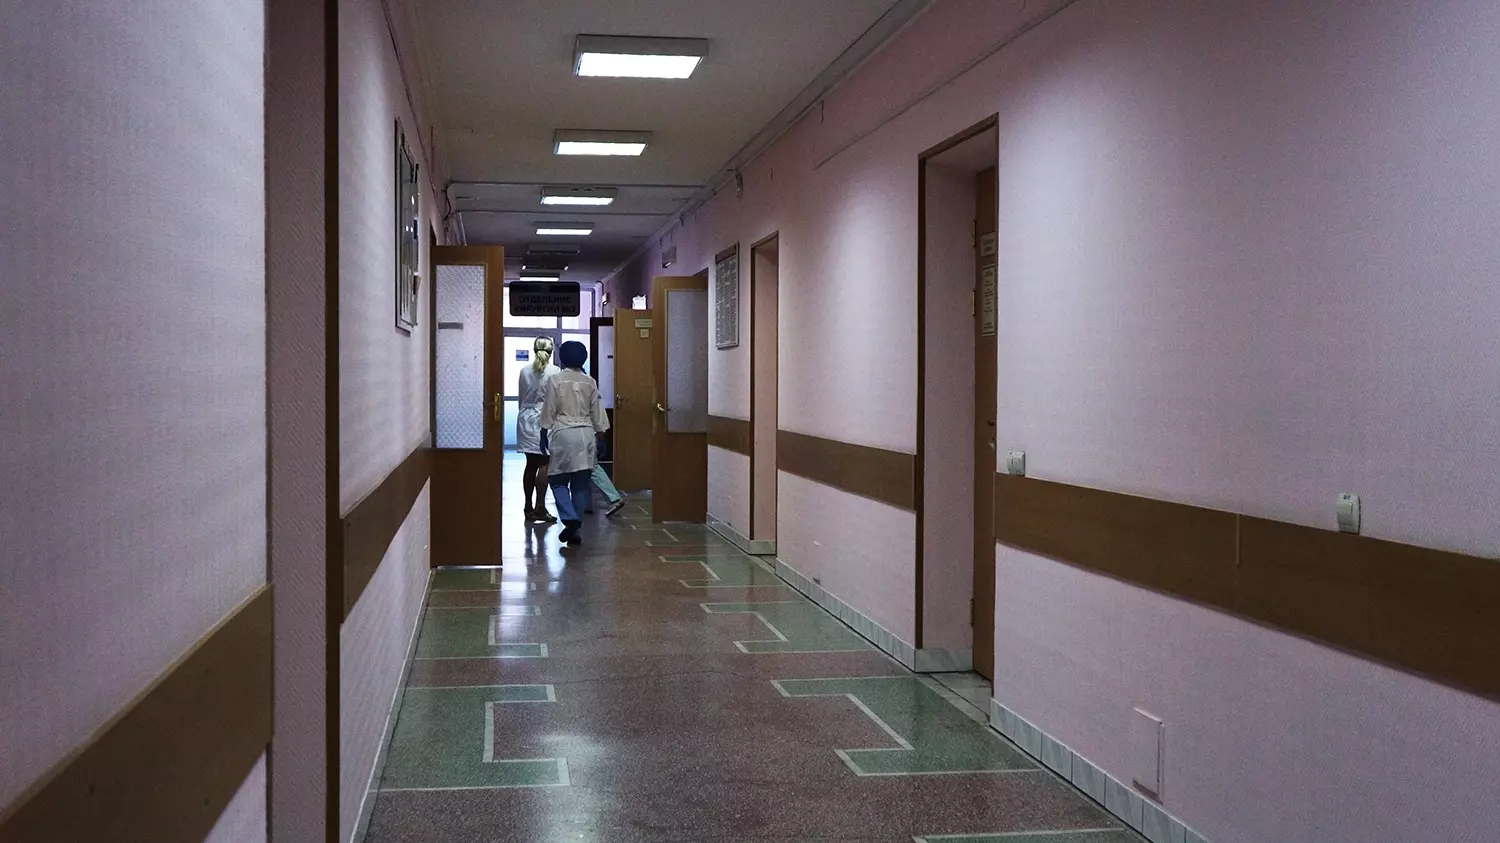 12-летняя девочка, избитая в школе, выписана из больницы в Башкирии